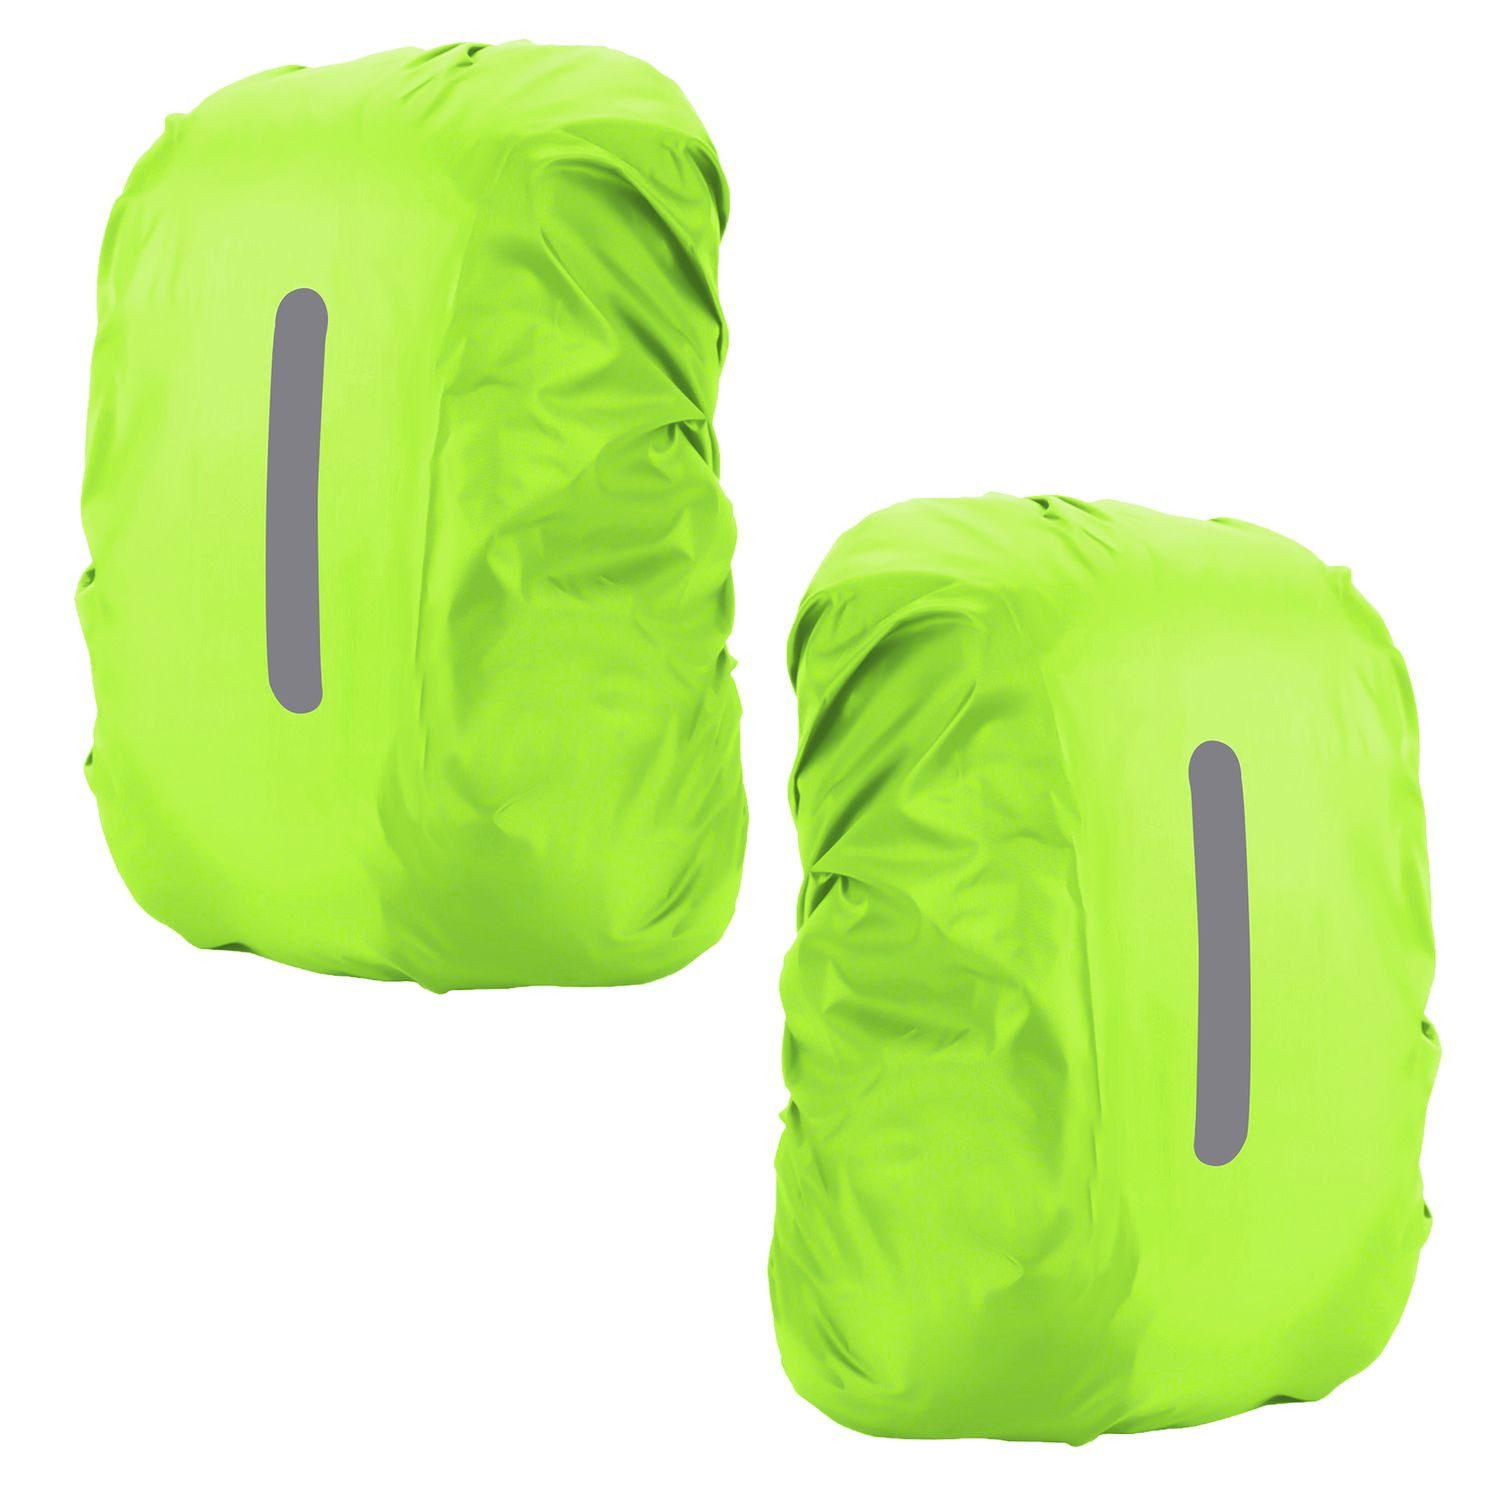 Intirilife Rucksack-Regenschutz, Wasserfester Regenhülle für Rucksäcke 55L in Gelb - Regenschutz